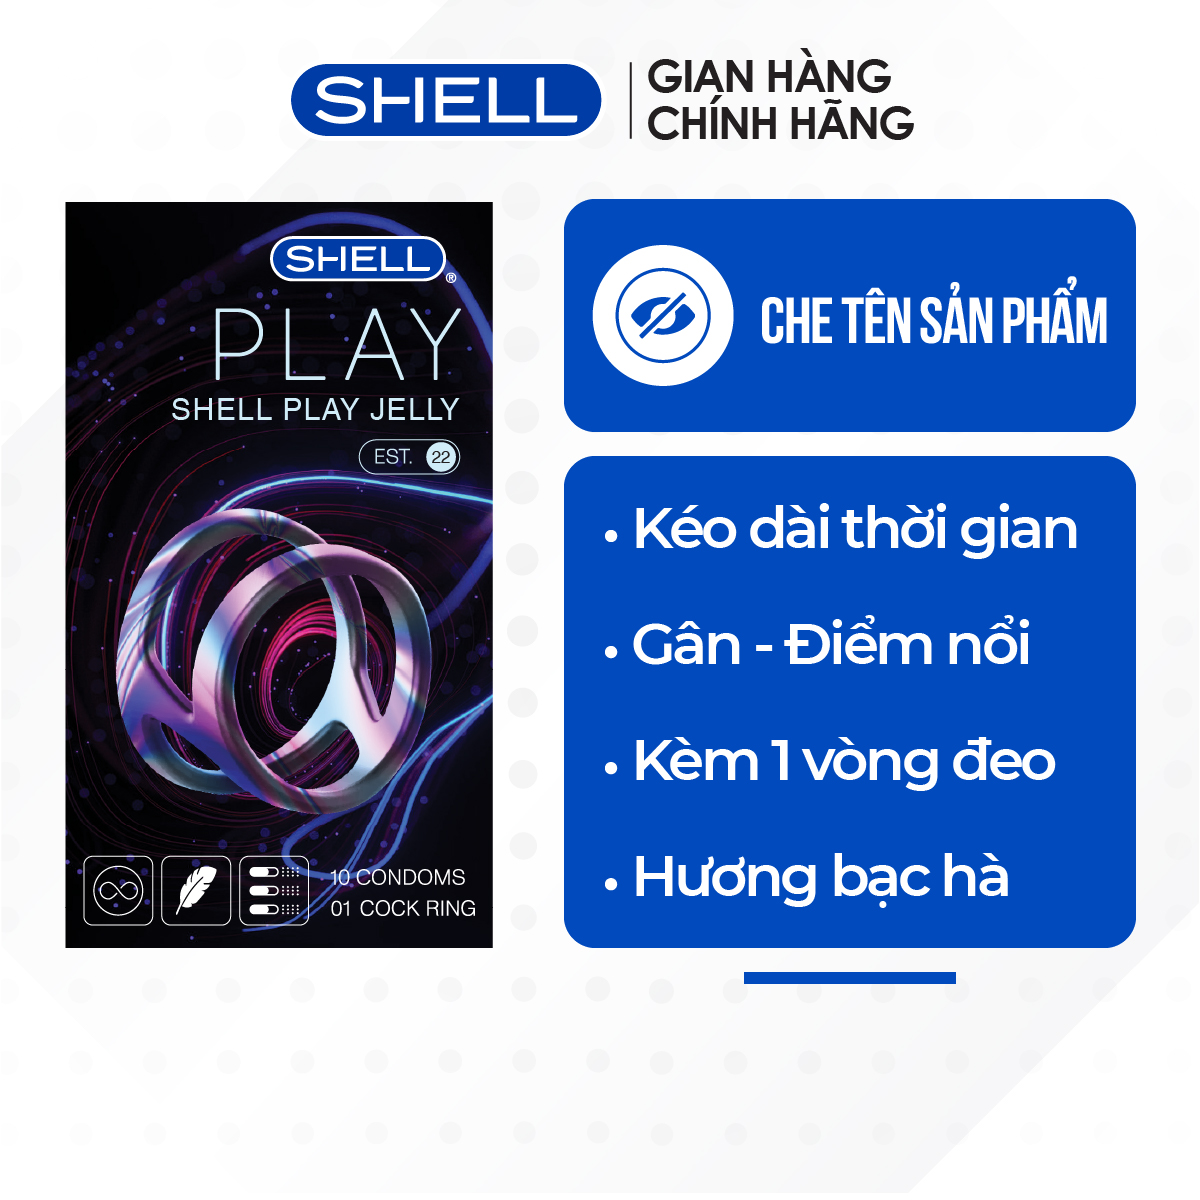 Bao cao su Shell Play Jelly 6 tính năng - Hộp 10 cái + 1 vòng đeo kéo dài thời gian | SHELL CHÍNH HÃNG